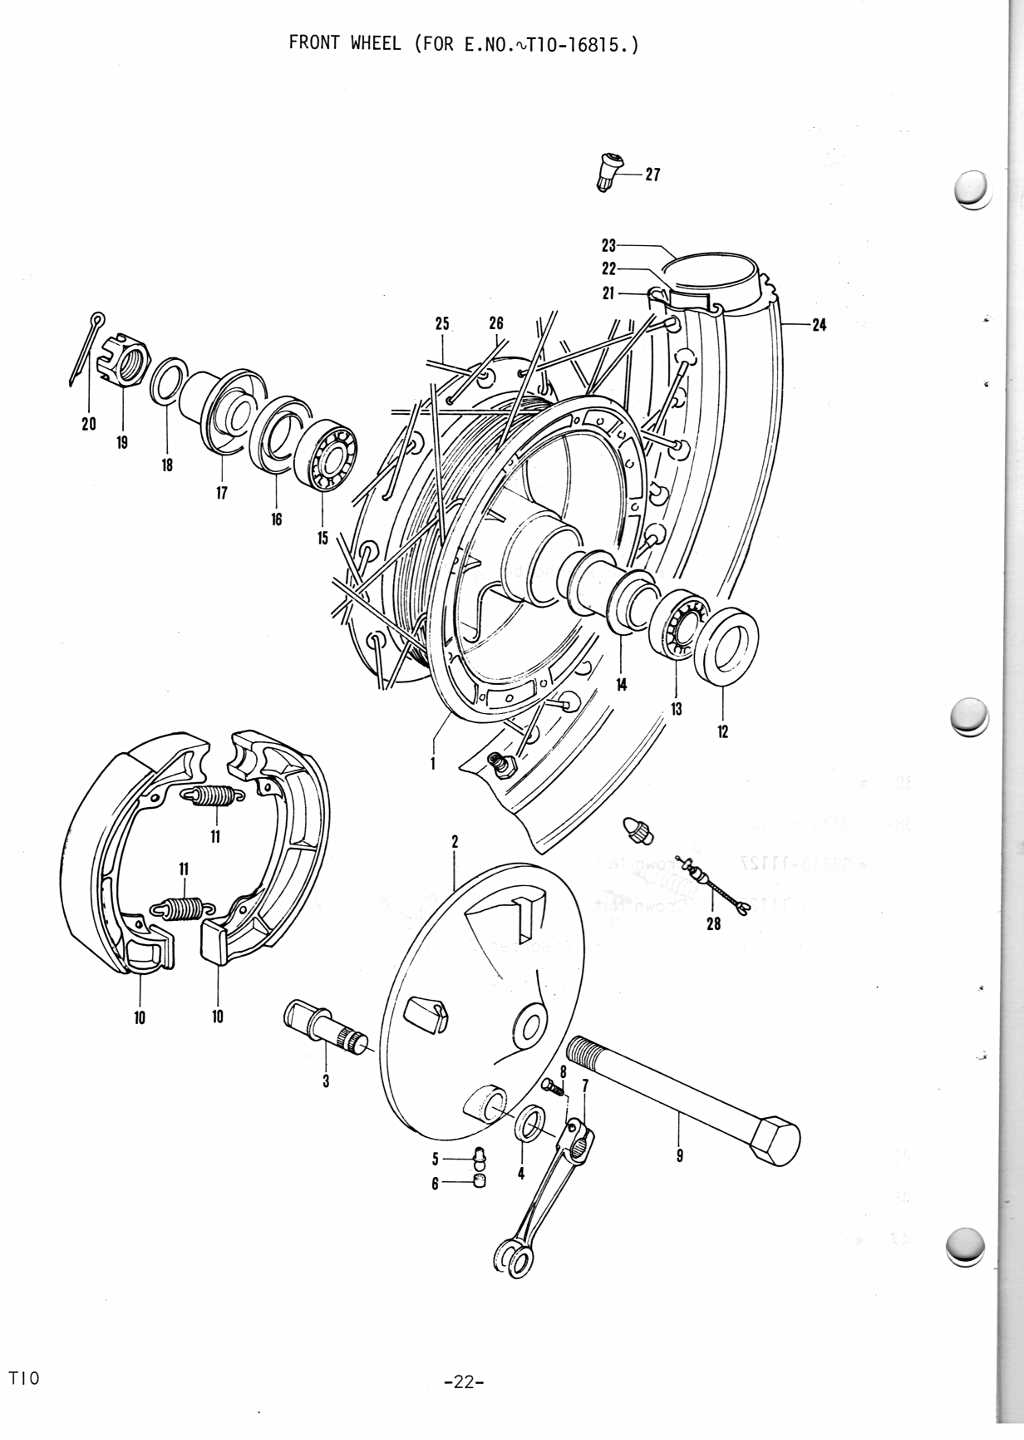 T10 Parts Manual